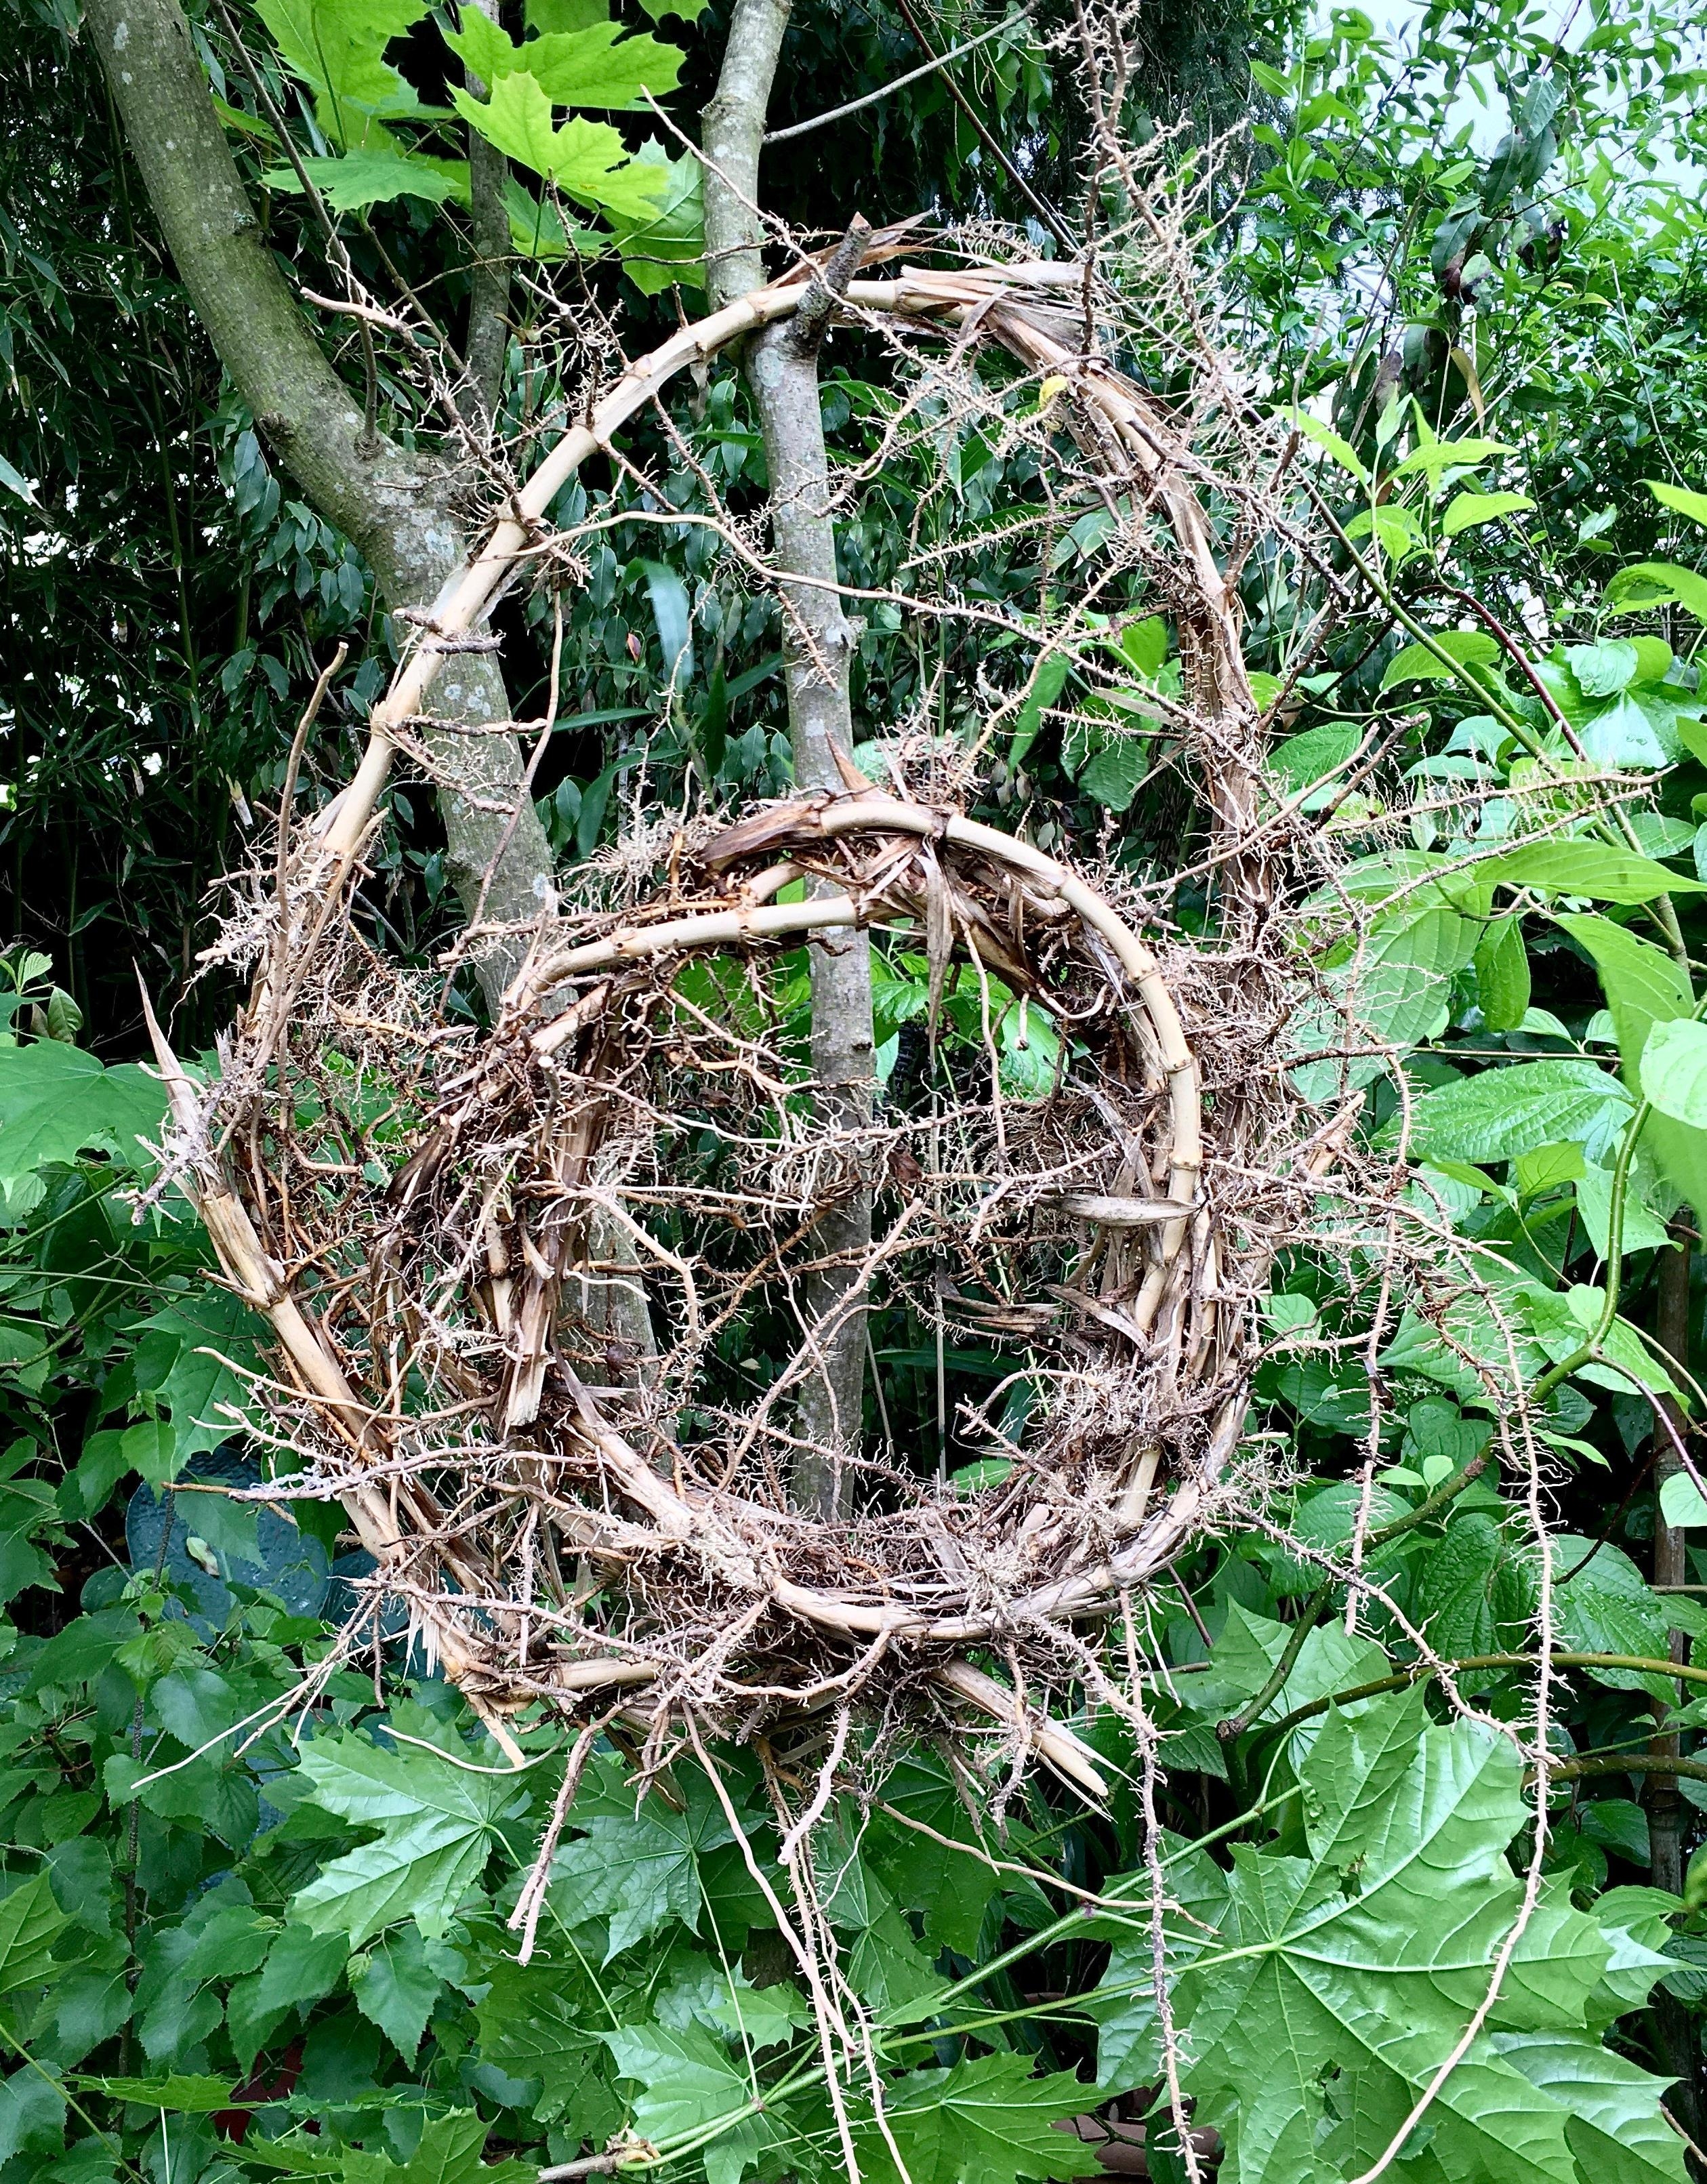 Objekt aus Wurzeln - spontane Kunst macht Spaß
#natürlichegartendeko #landart
#grün #ideen #kunstimgarten #sommer #natur